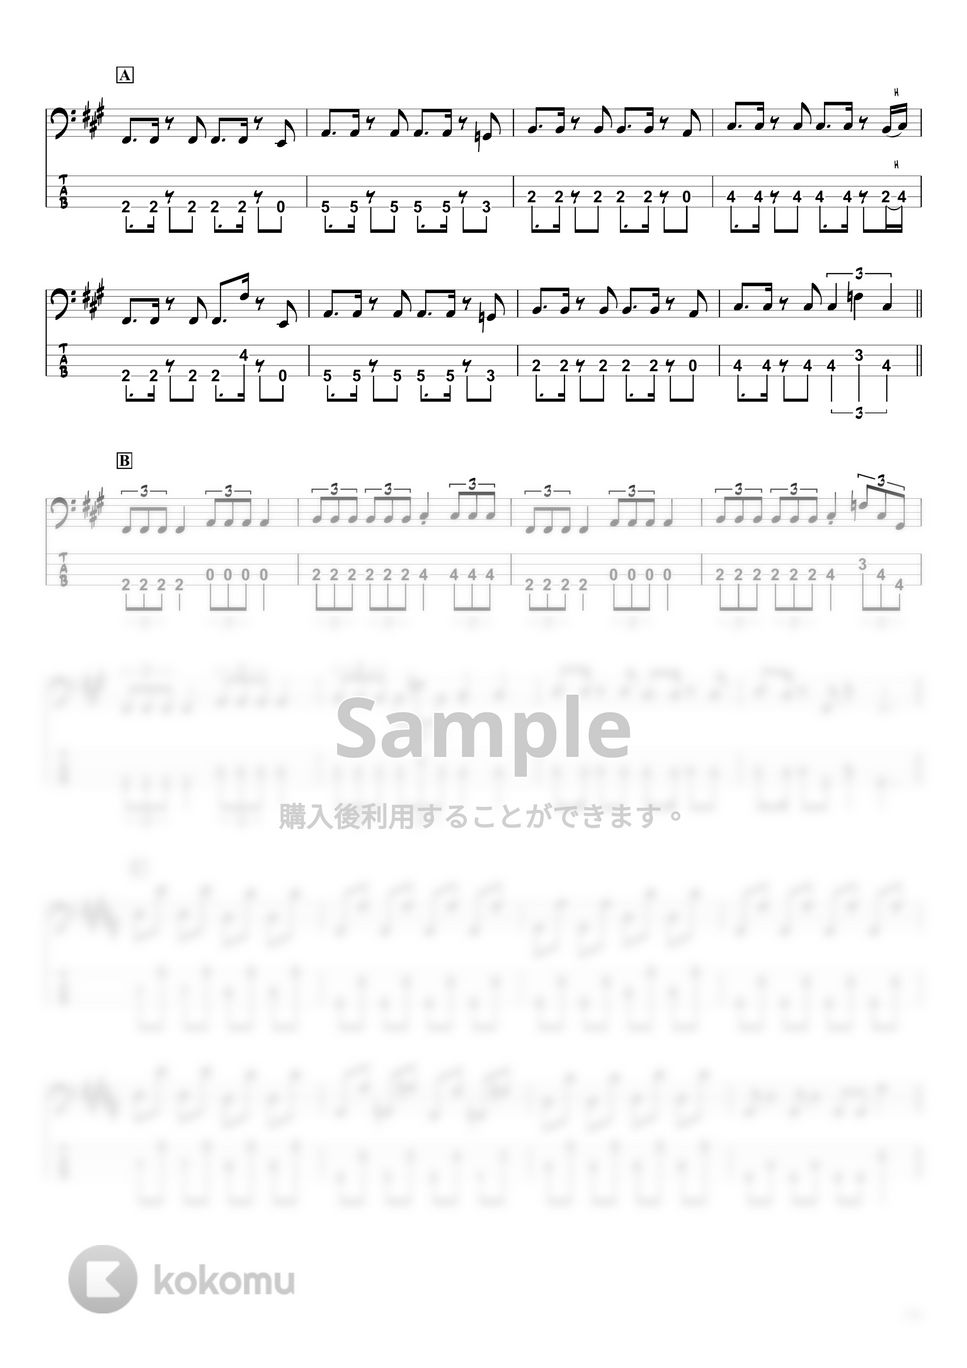 かいりきベア - ダーリンダンス (ベースTAB譜☆4弦ベース対応) by swbass